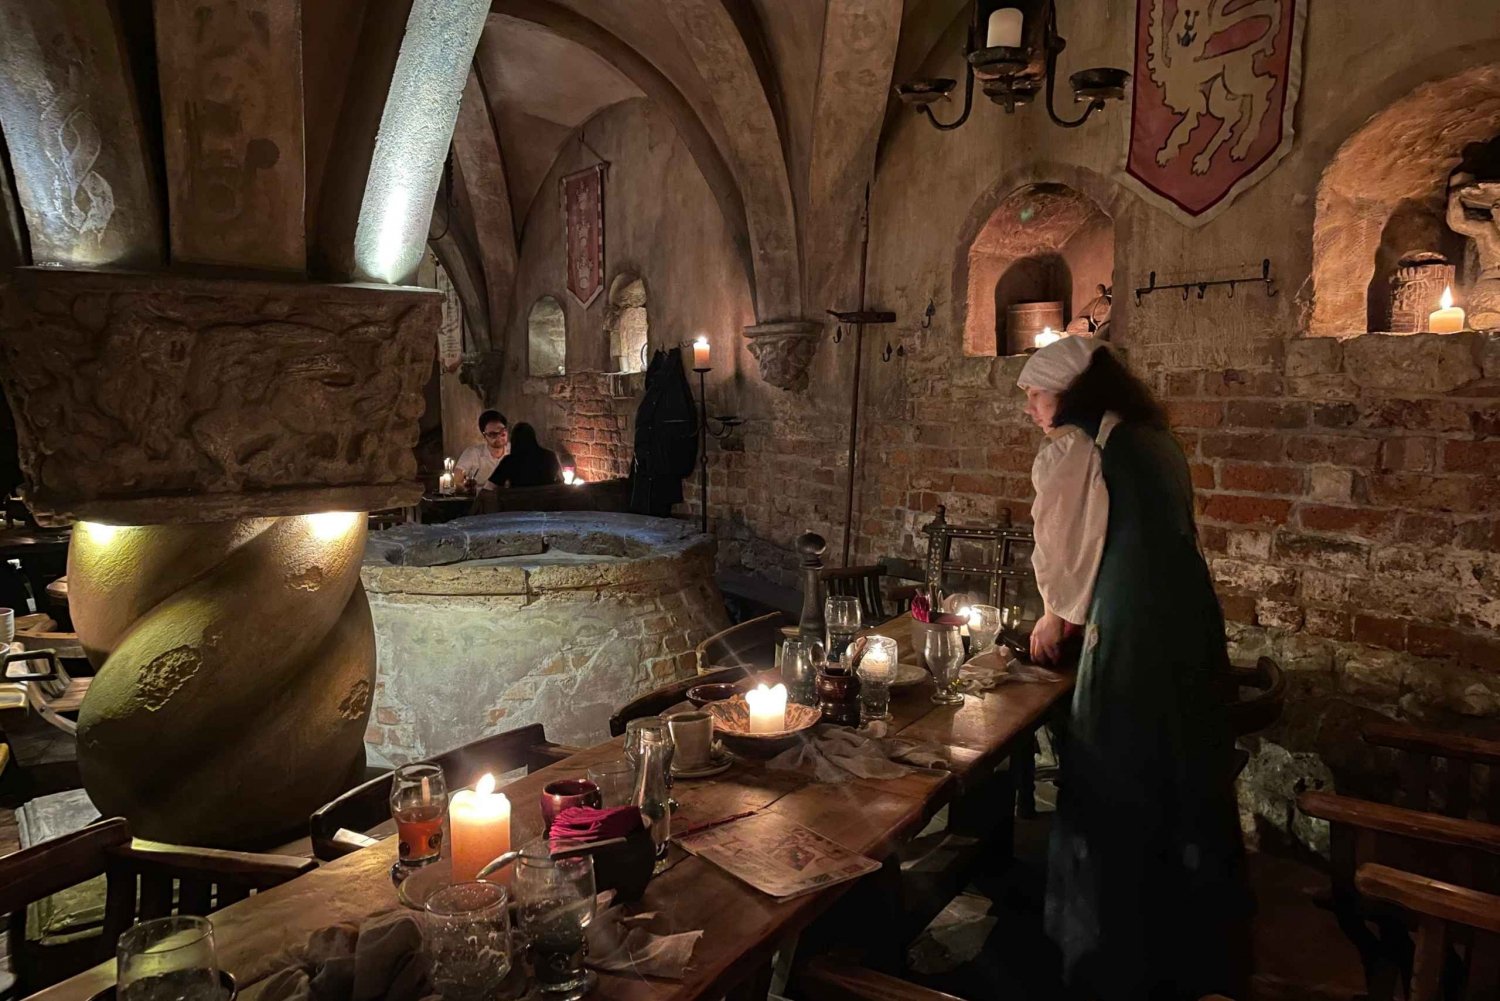 Noches Medievales: Visita al Bar y Aventura Guiada